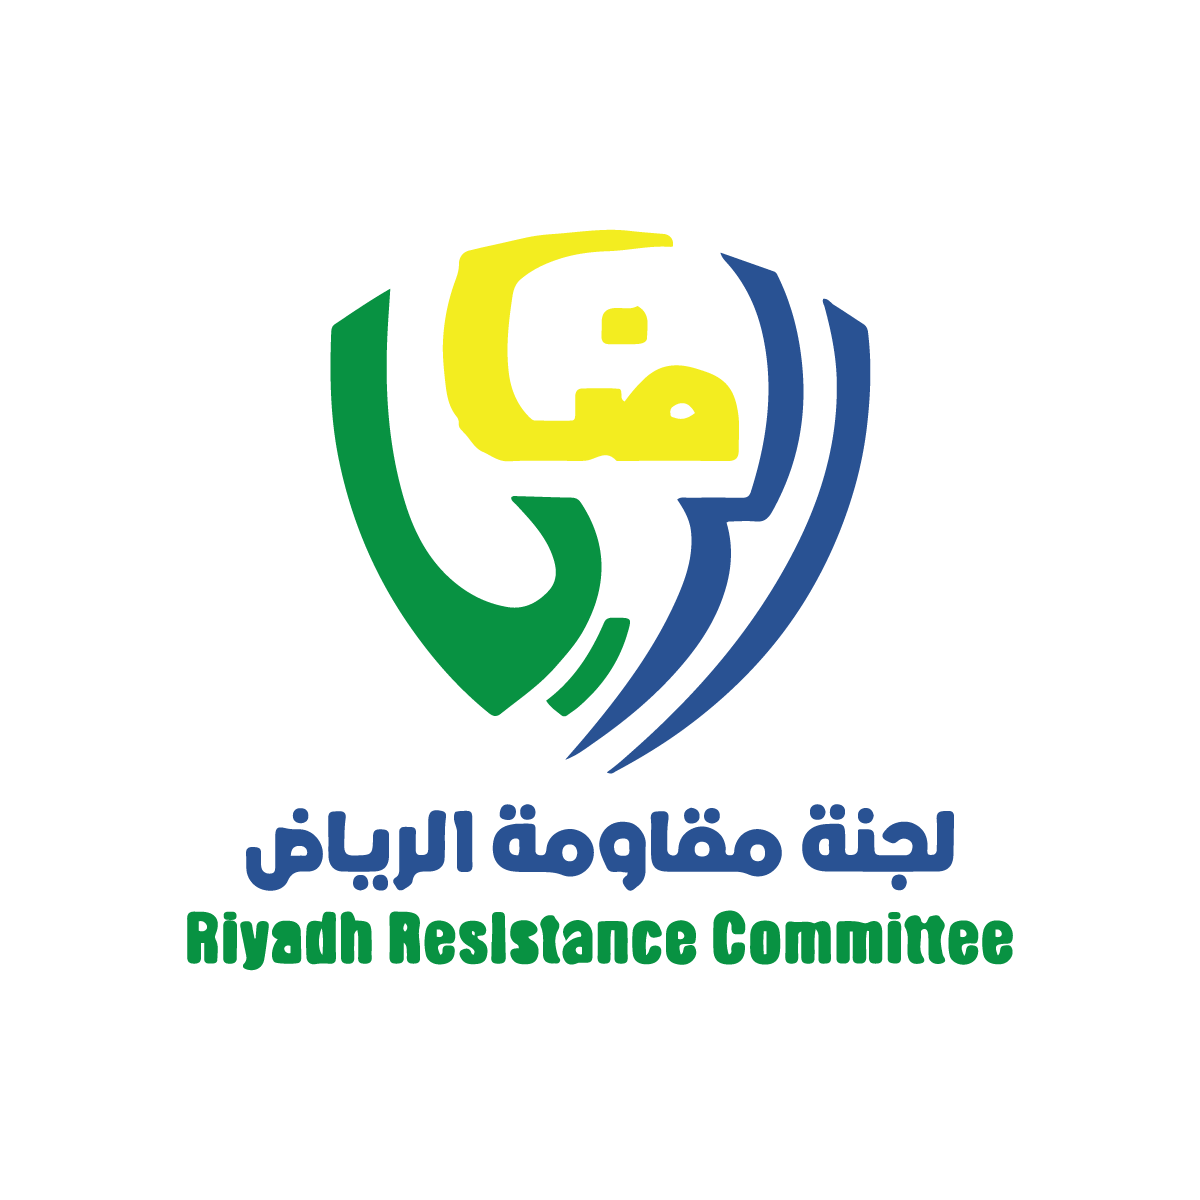 لجنة مقاومة الرياض